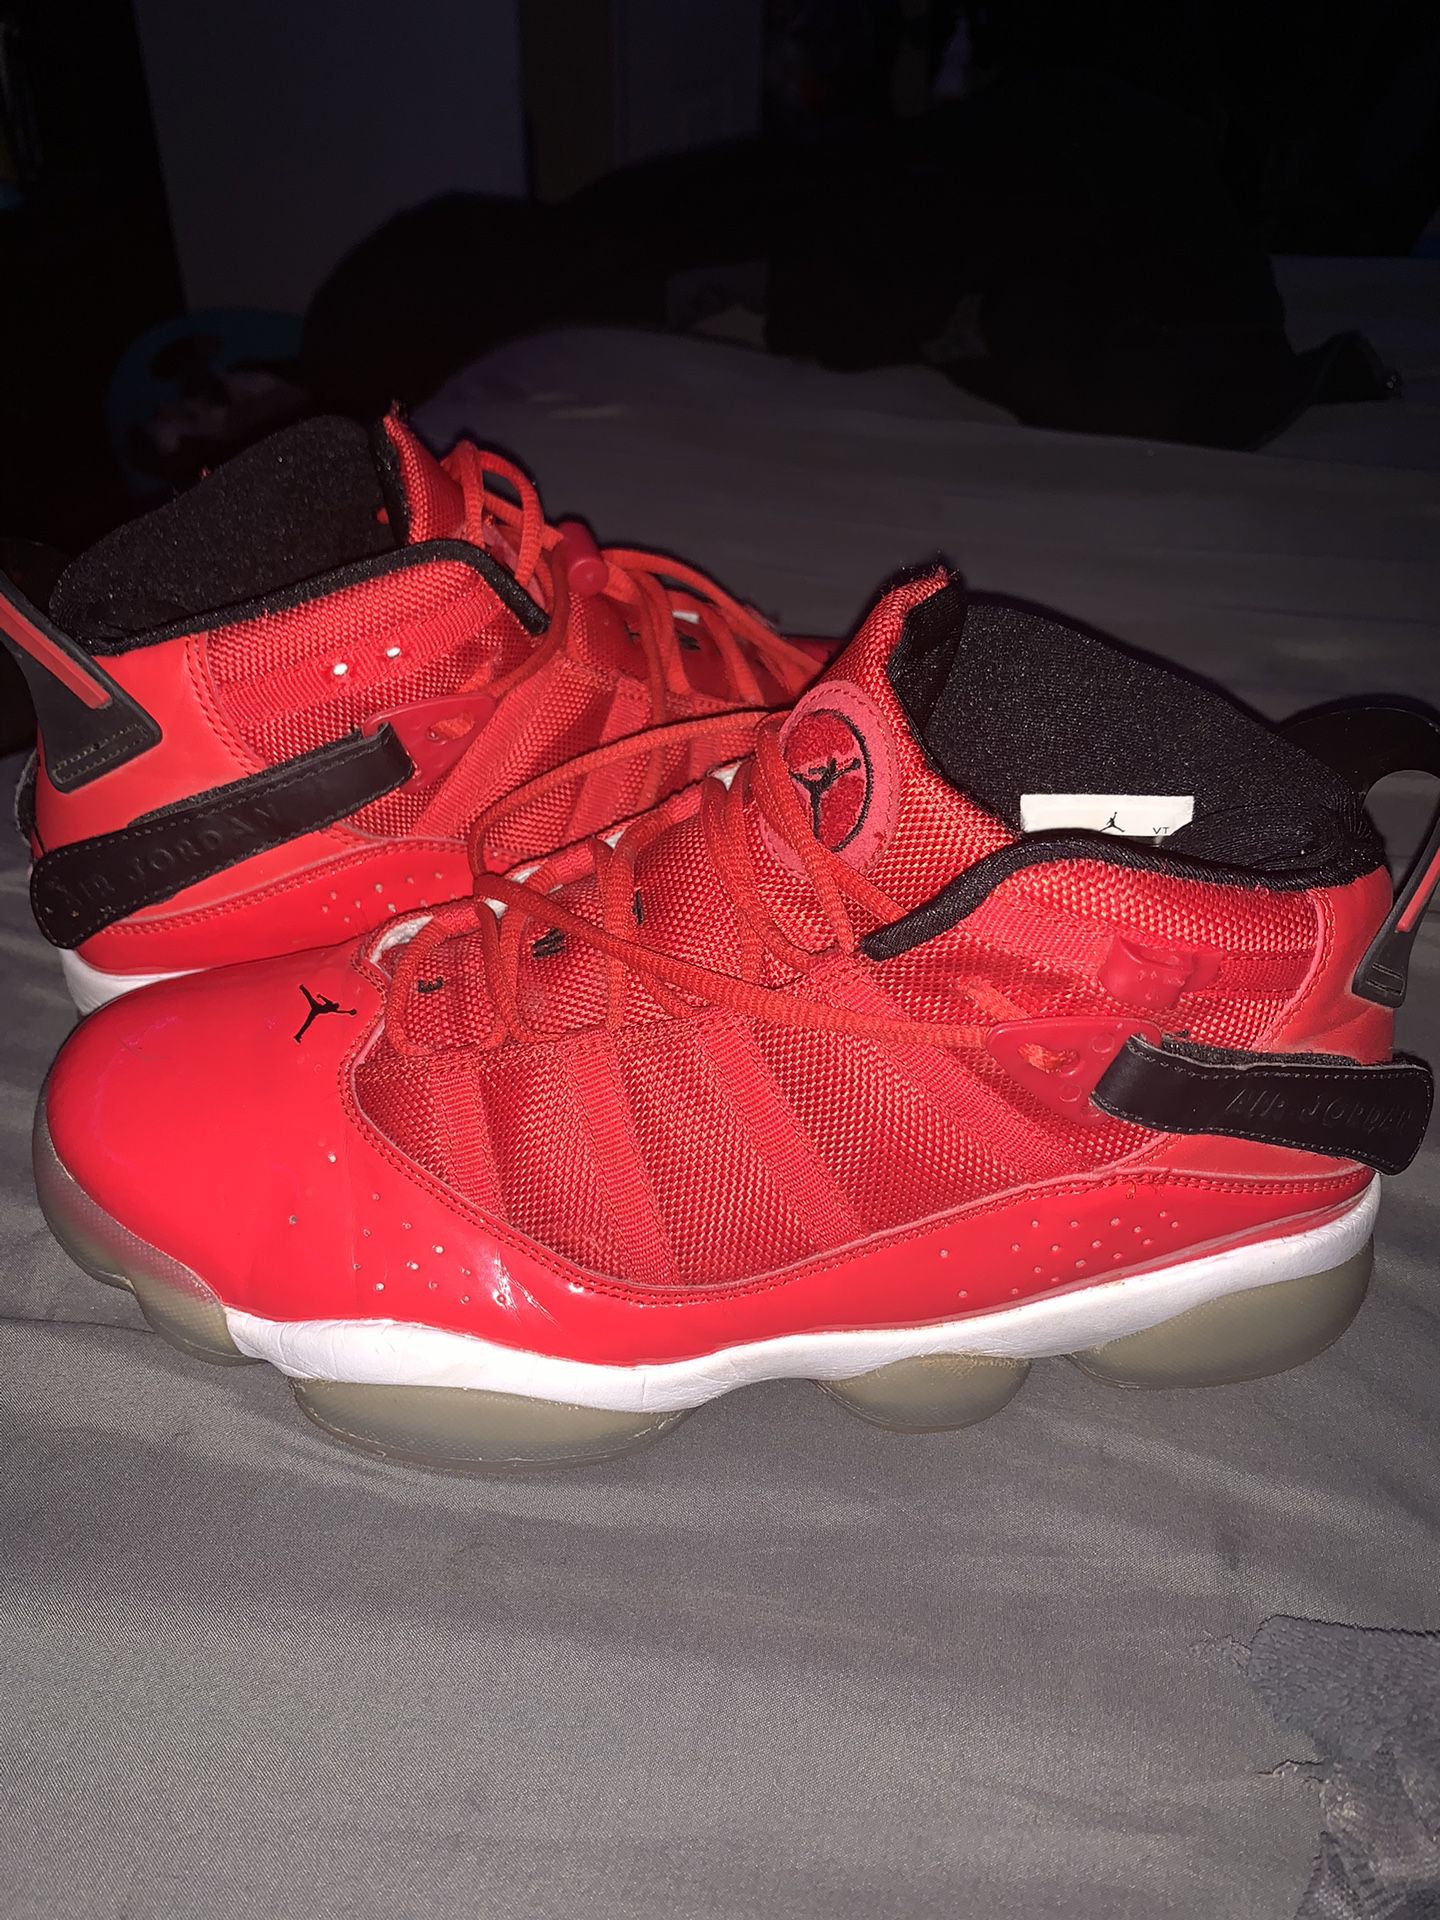 Jordan 6 Rings Gym Red, Size 10s